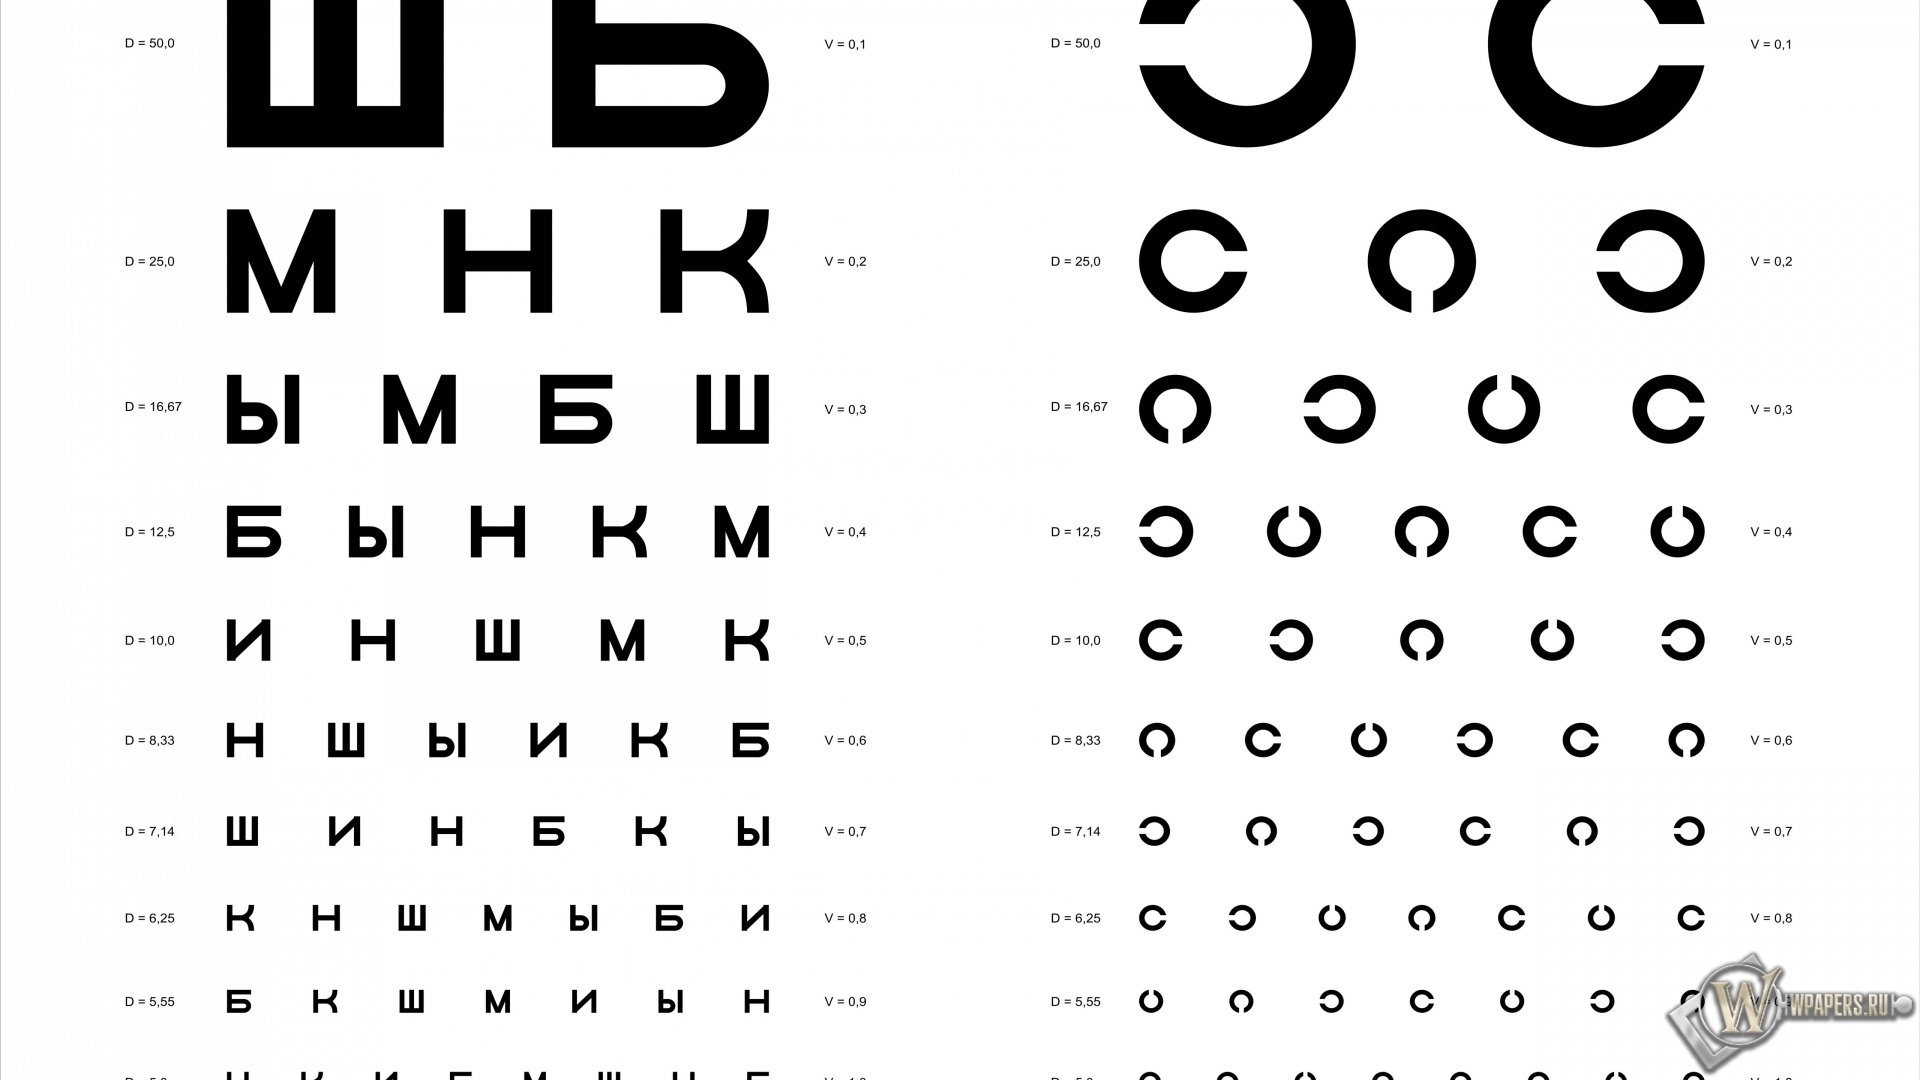 Таблица Д.А. Сивцева для проверки зрения 1920x1080